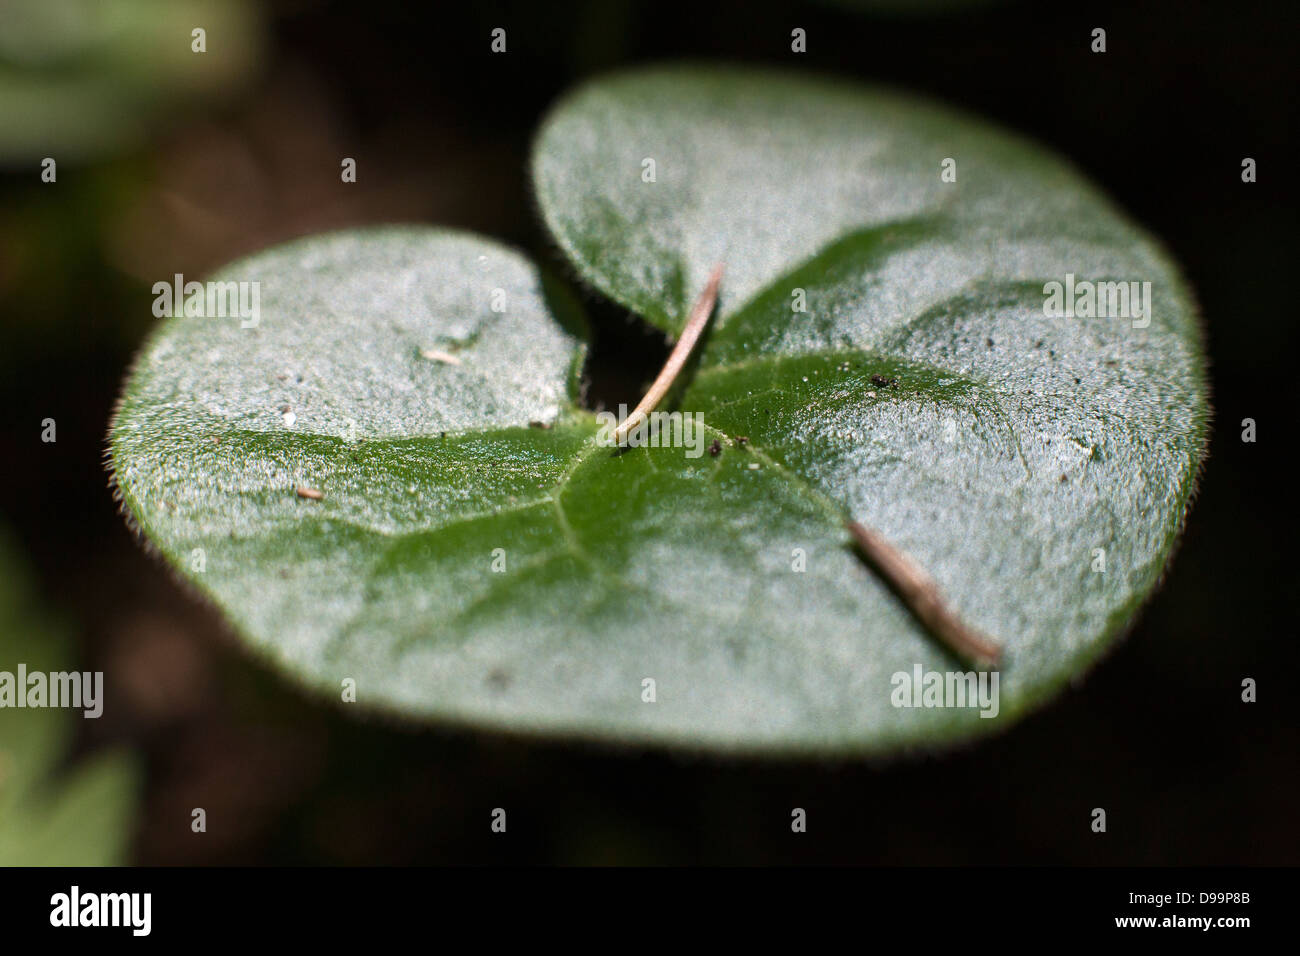 Les feuilles vertes de l'europaeum Asarum, communément connu sous le nom de gingembre sauvage européenne, asarabacca, Hazelwort, et Wild nard Banque D'Images